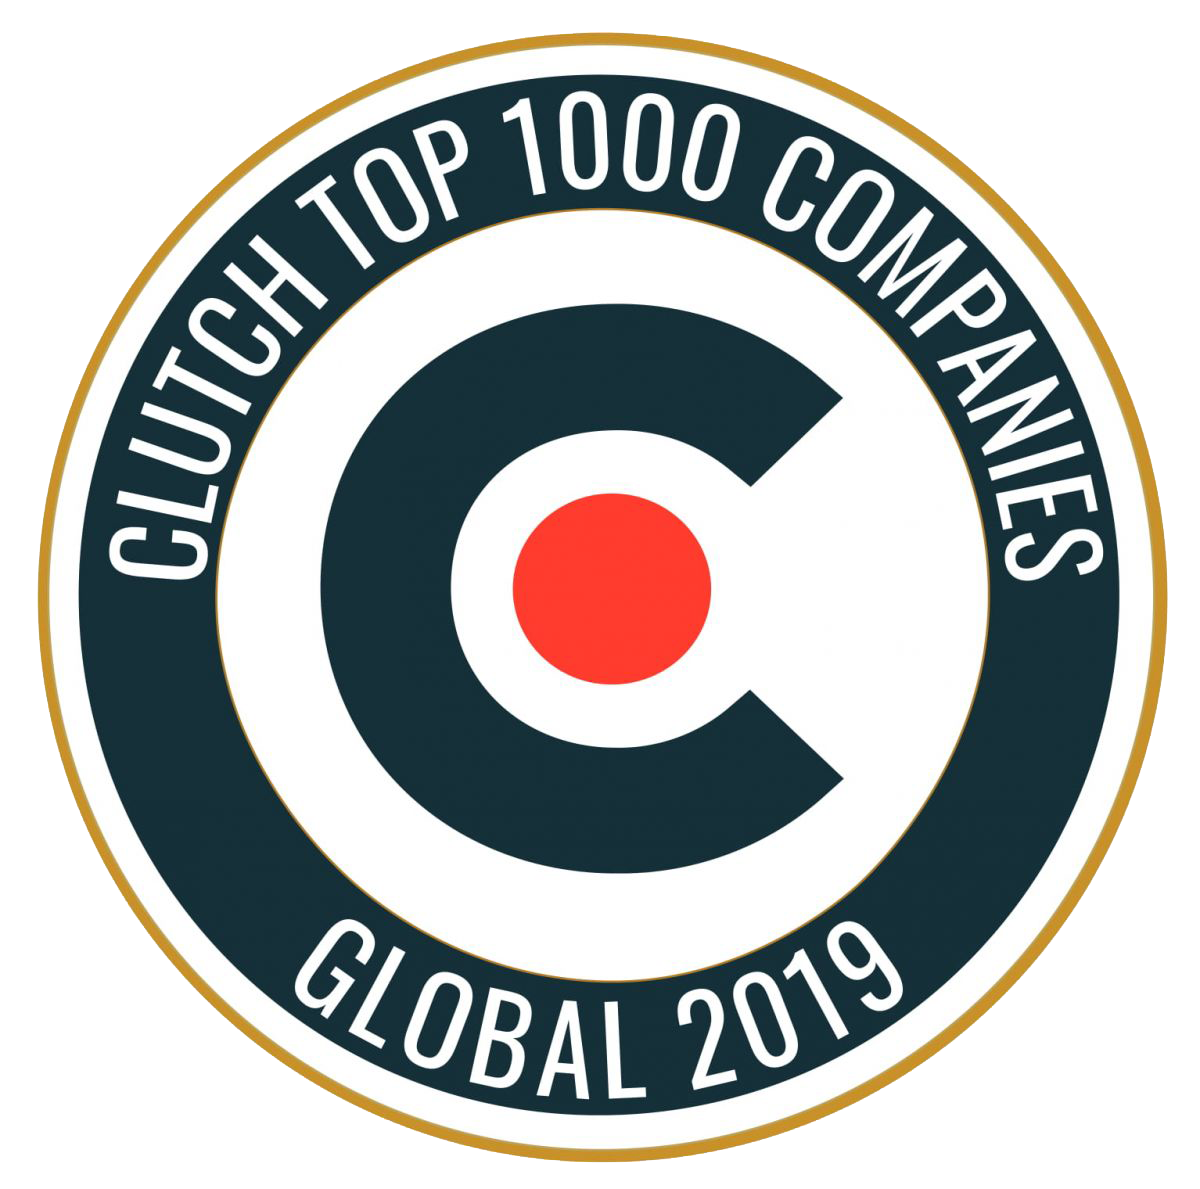 Clutch Top 1000 Global Company Badge